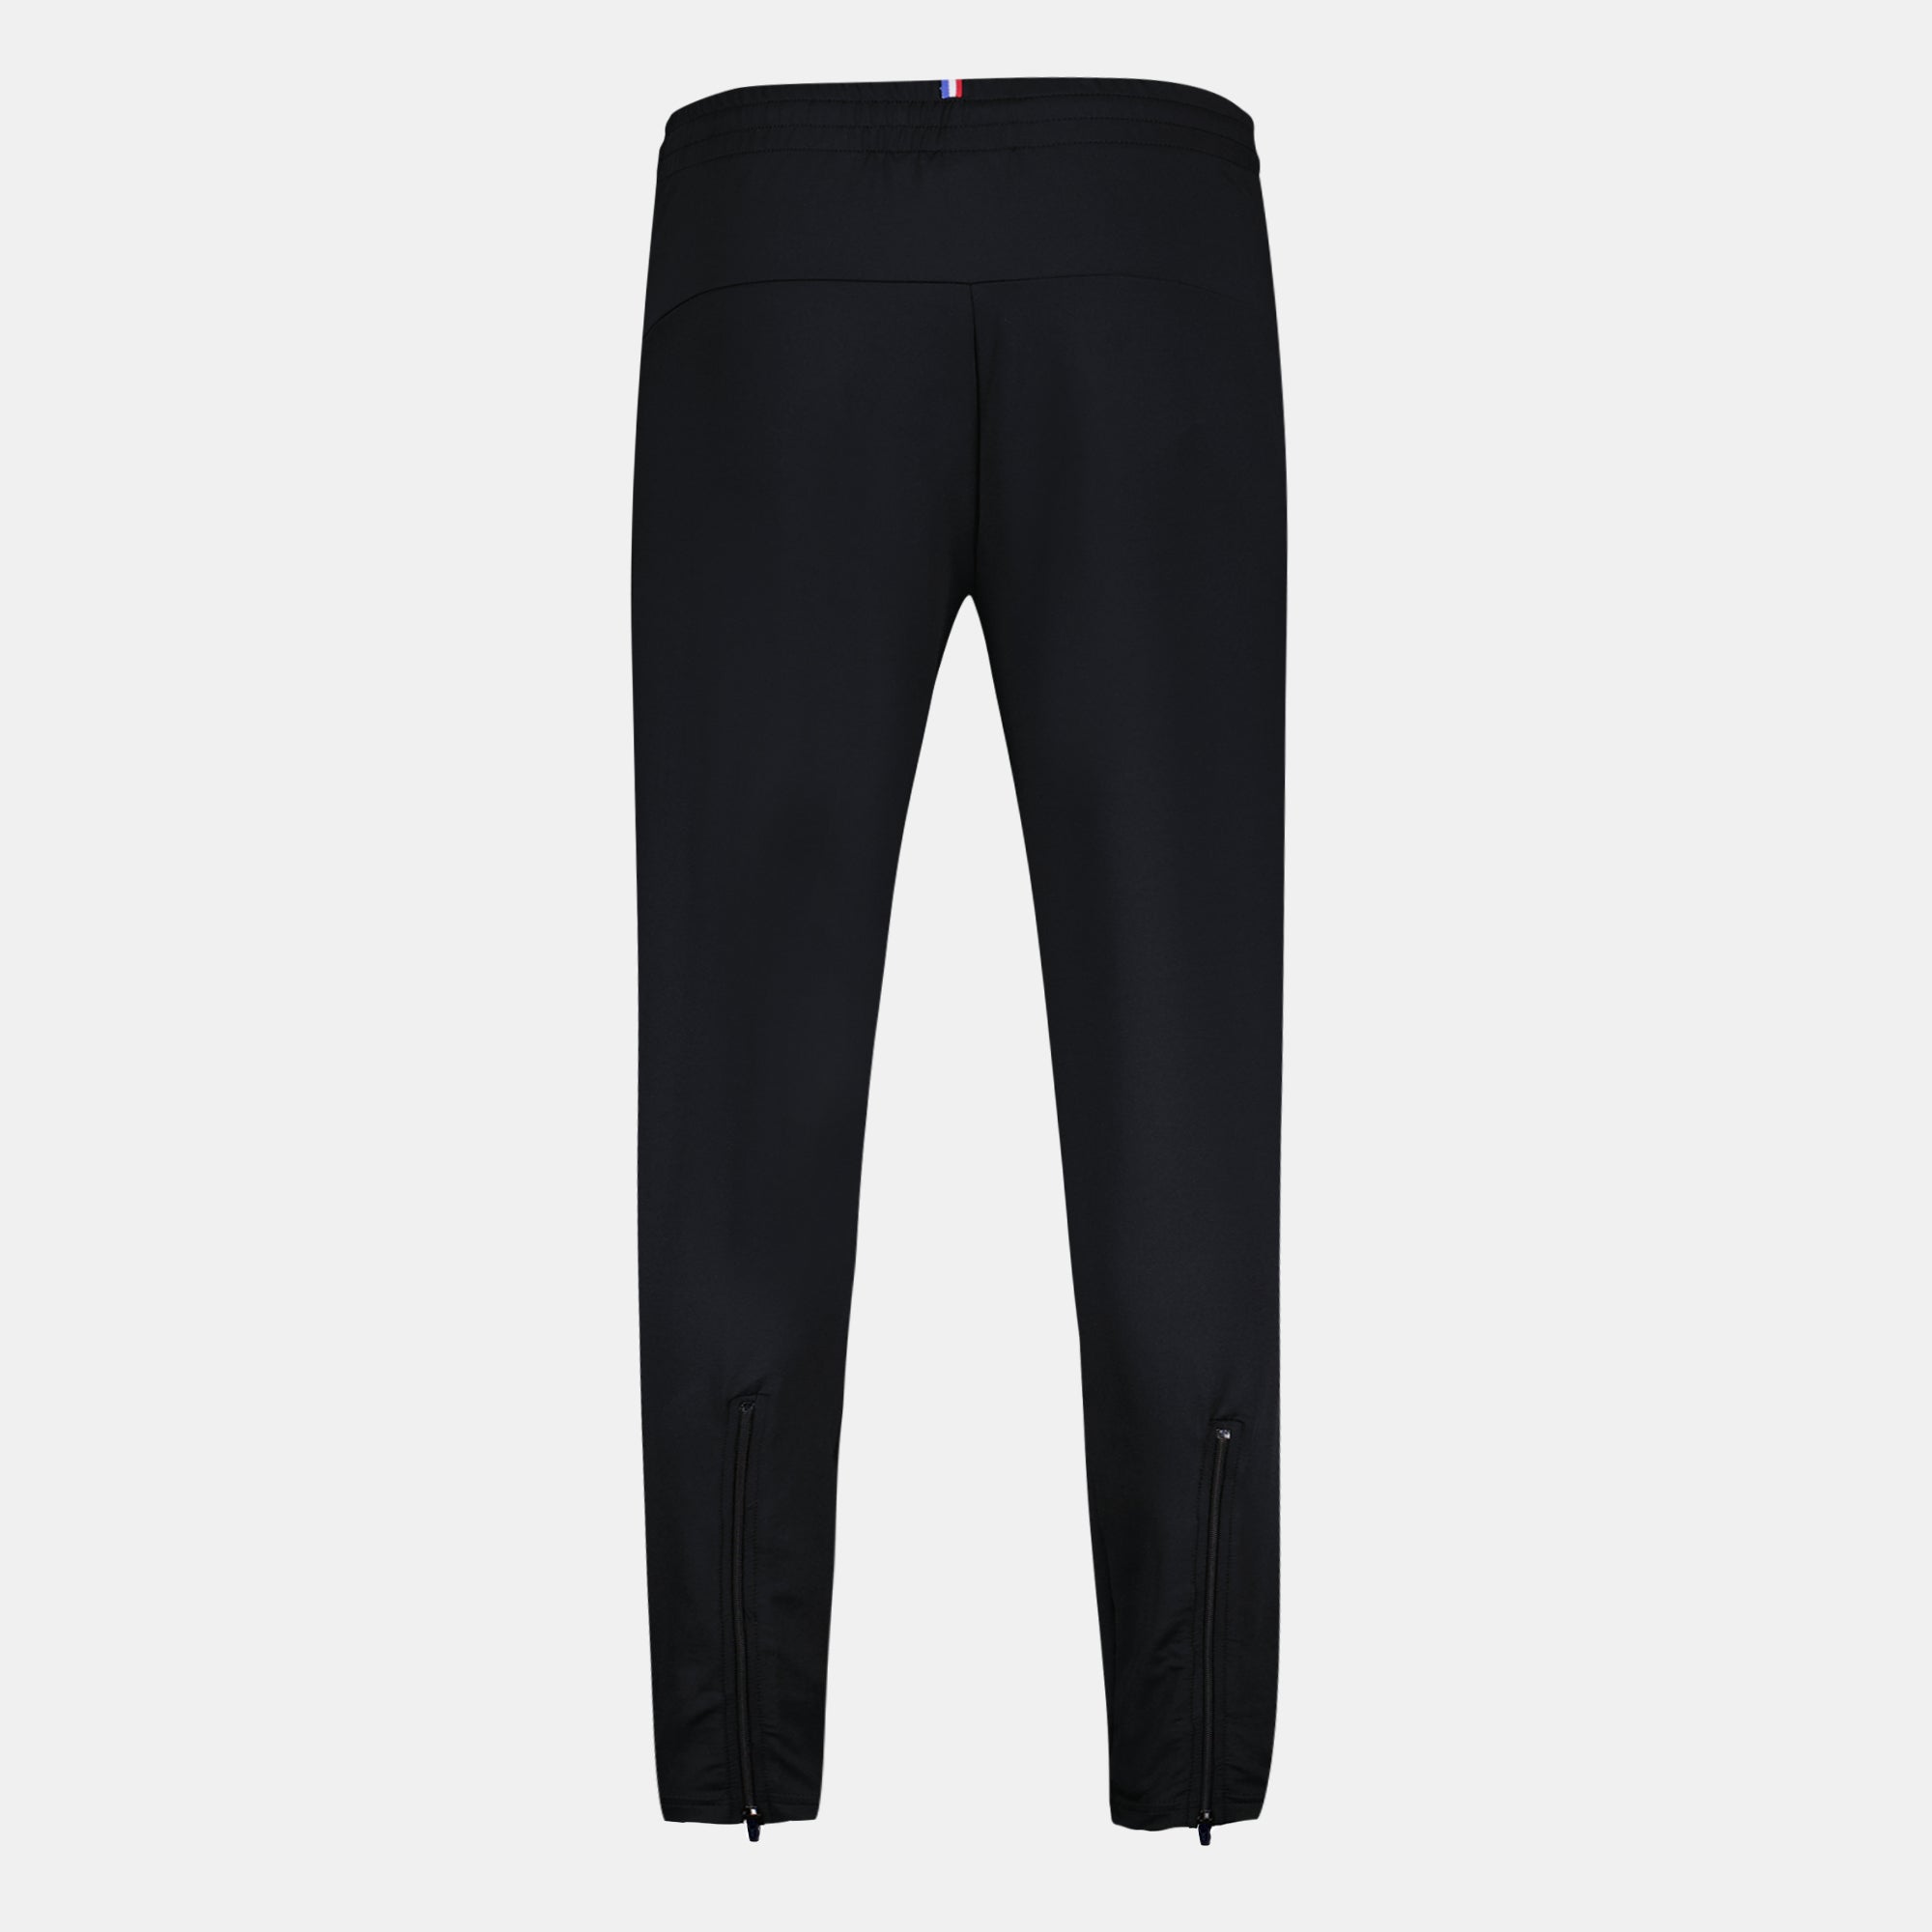 2320914-OGC NICE TRAINING Pant M black  | Trousers de sport Unisex